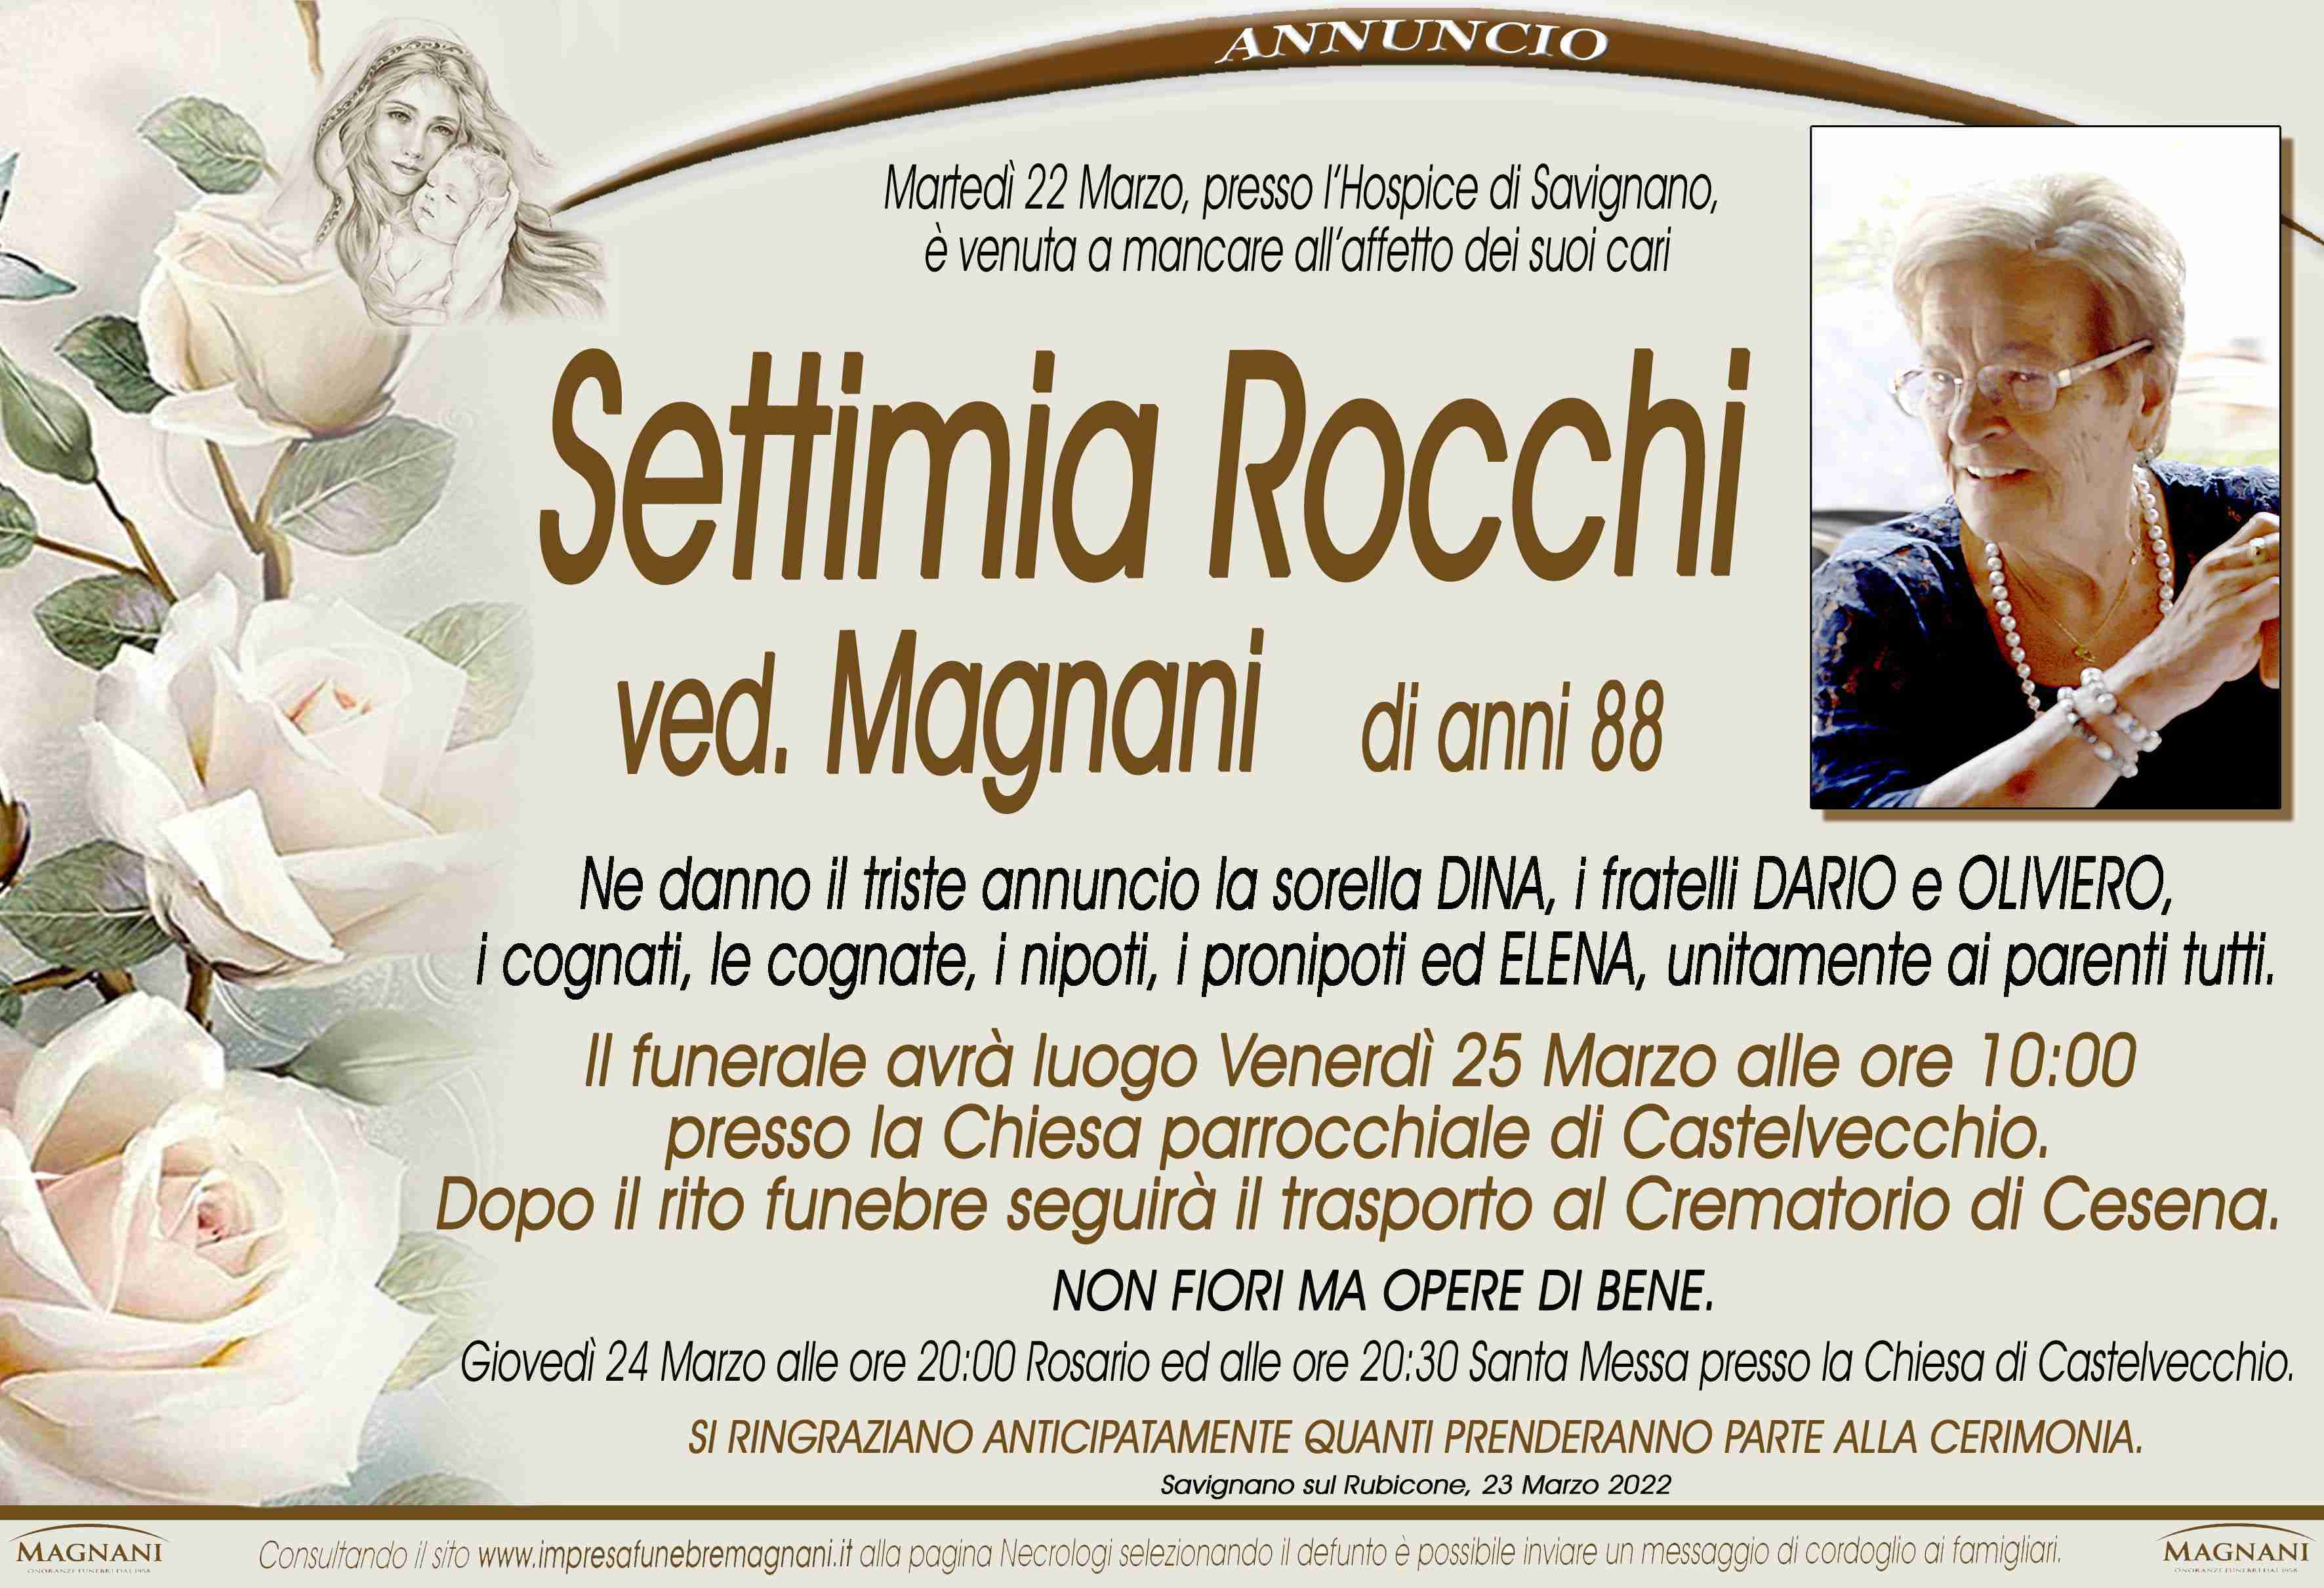 Settimia Rocchi